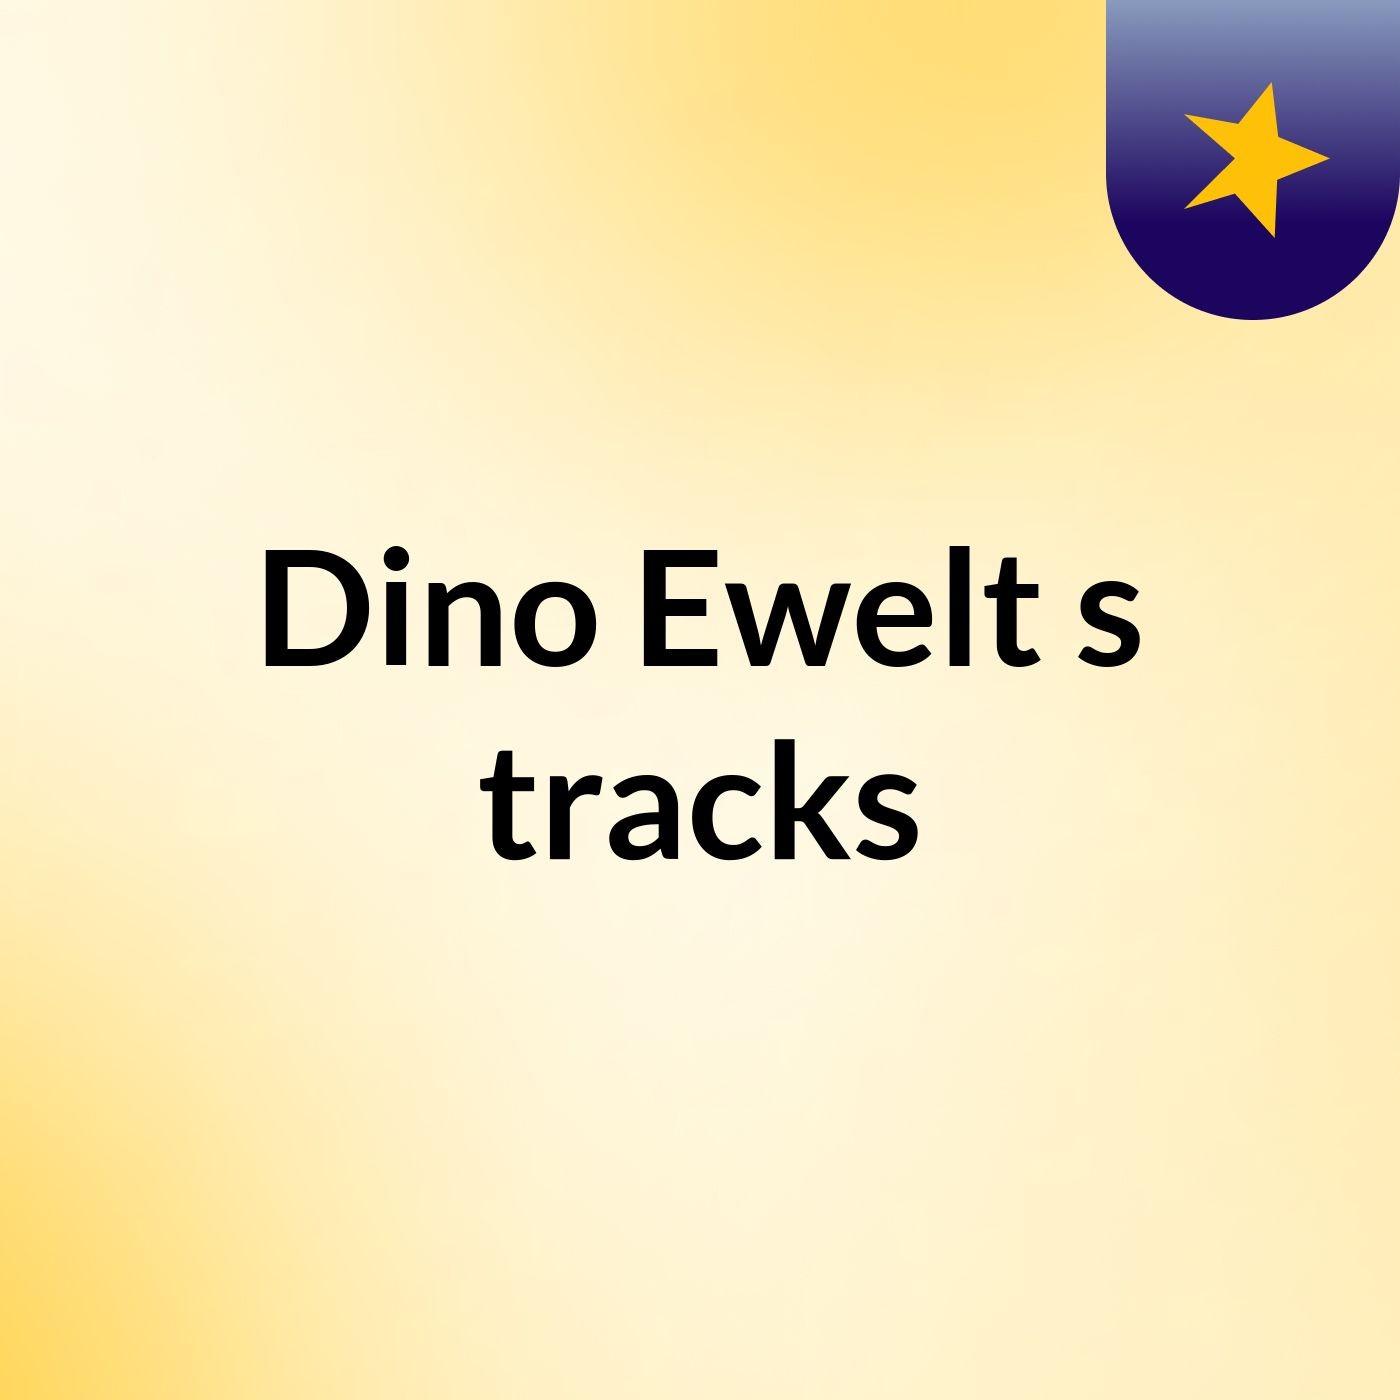 Dino Ewelt's tracks